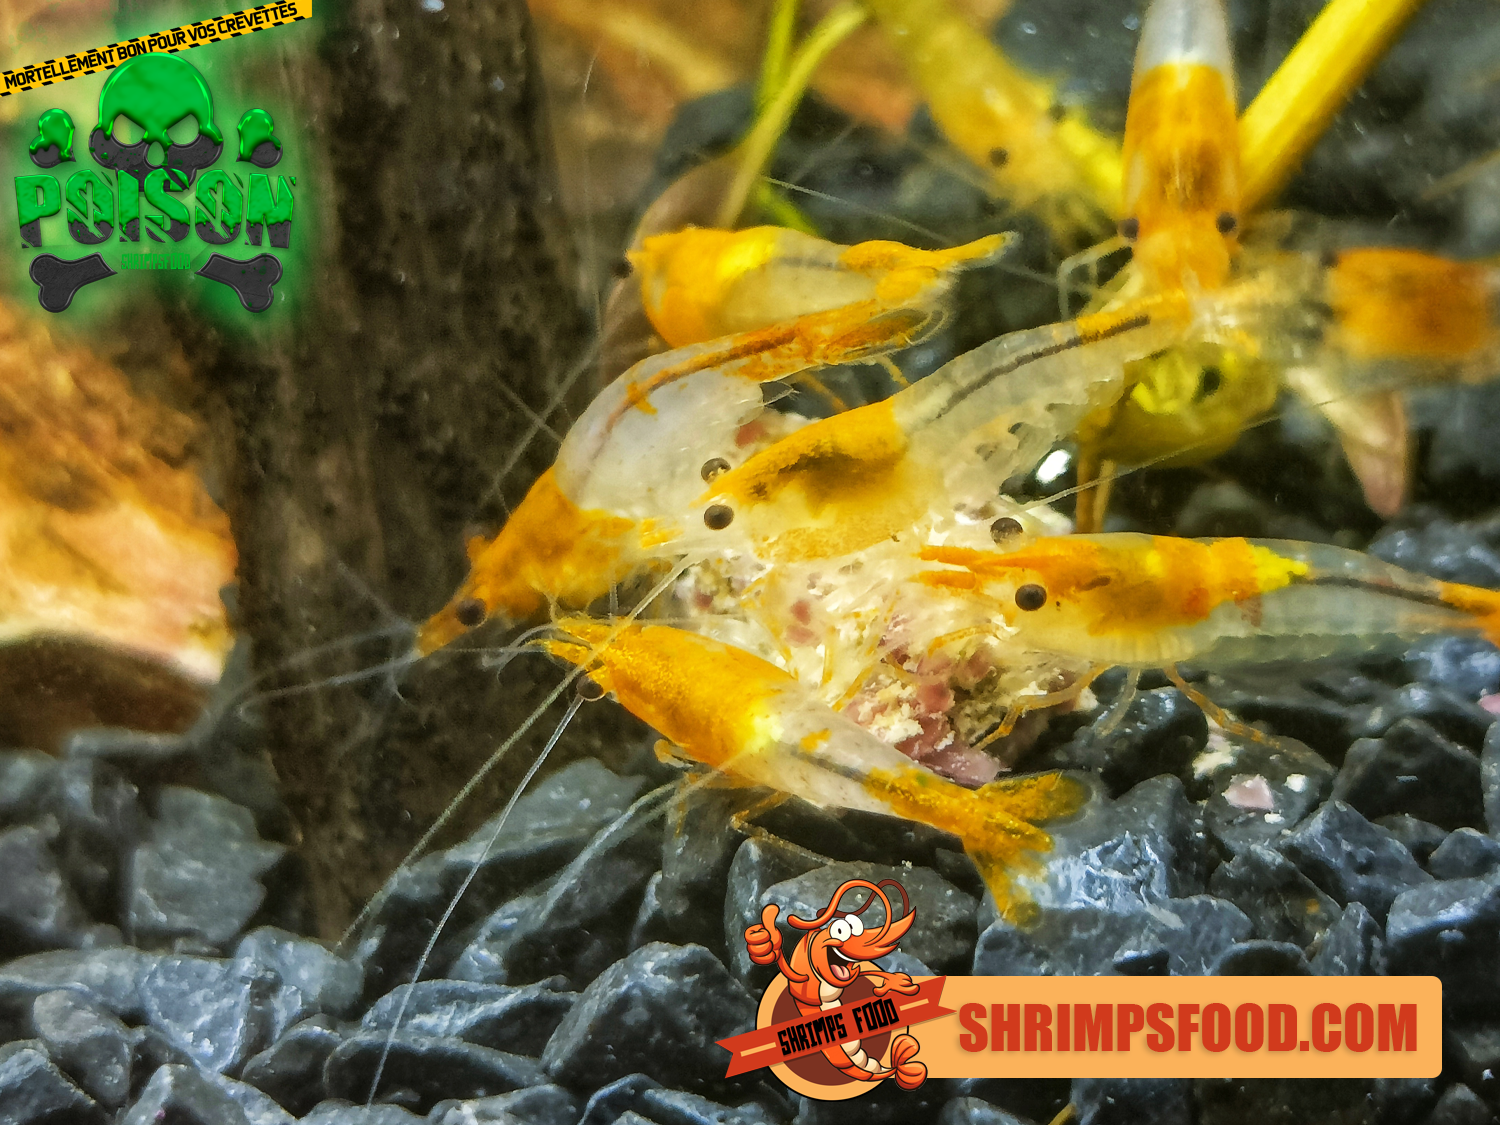 Poison nourriture pour crevettes – Shrimpsfood